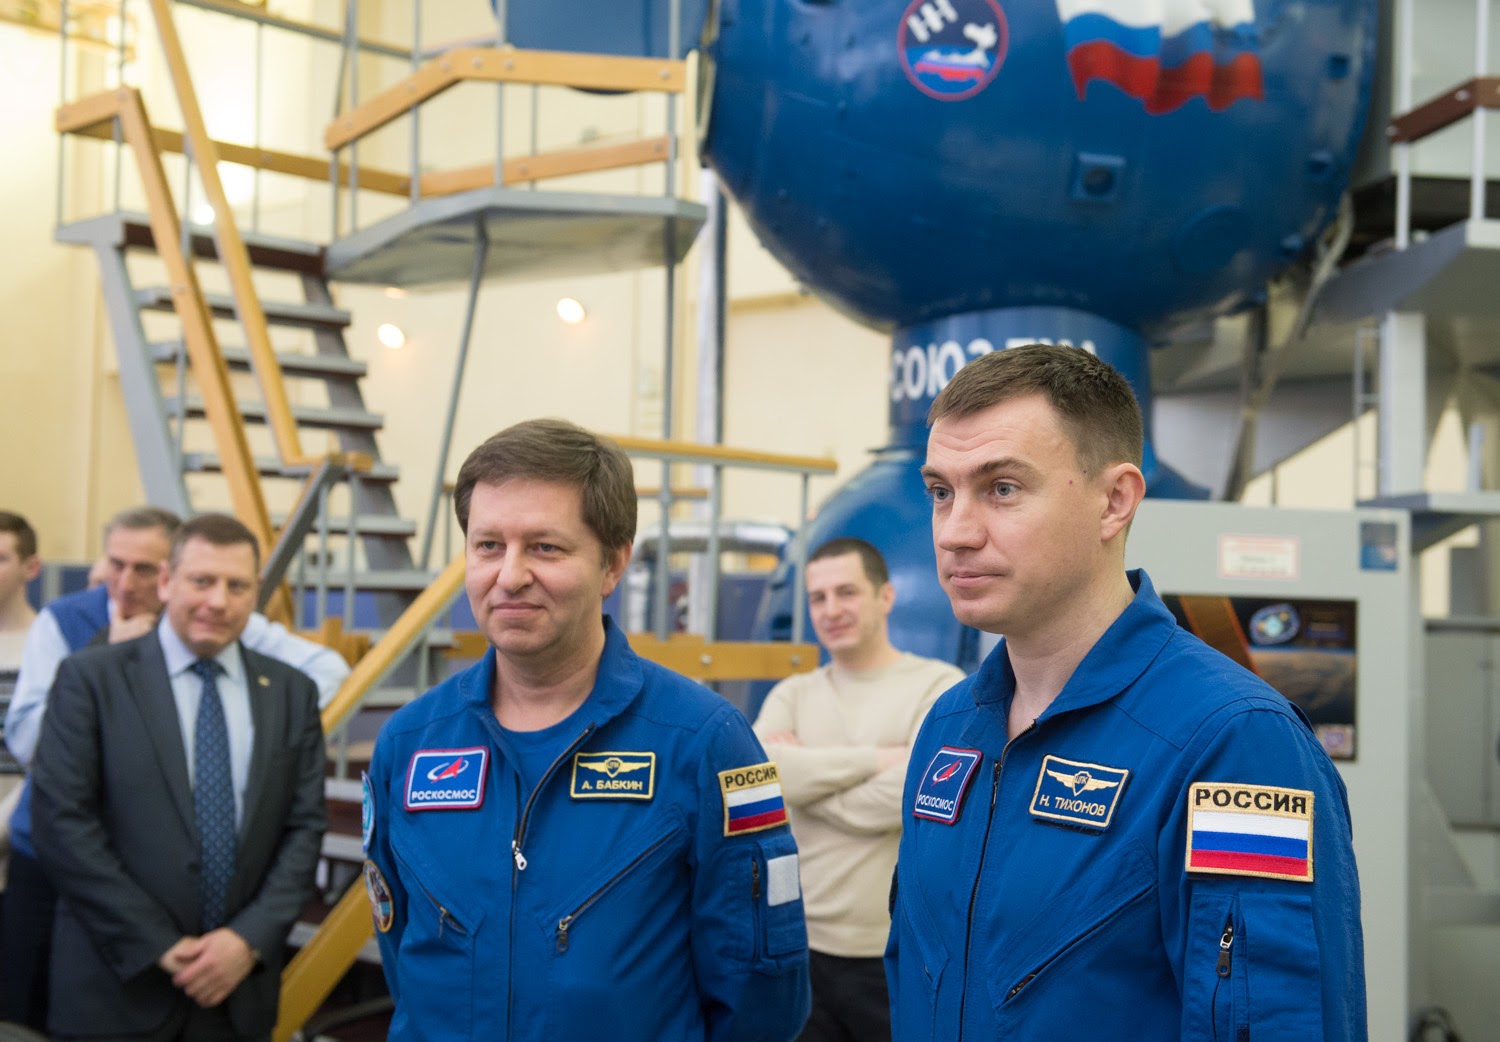 Интервью перед стартом: беседа с экипажем МКС-63 ﻿